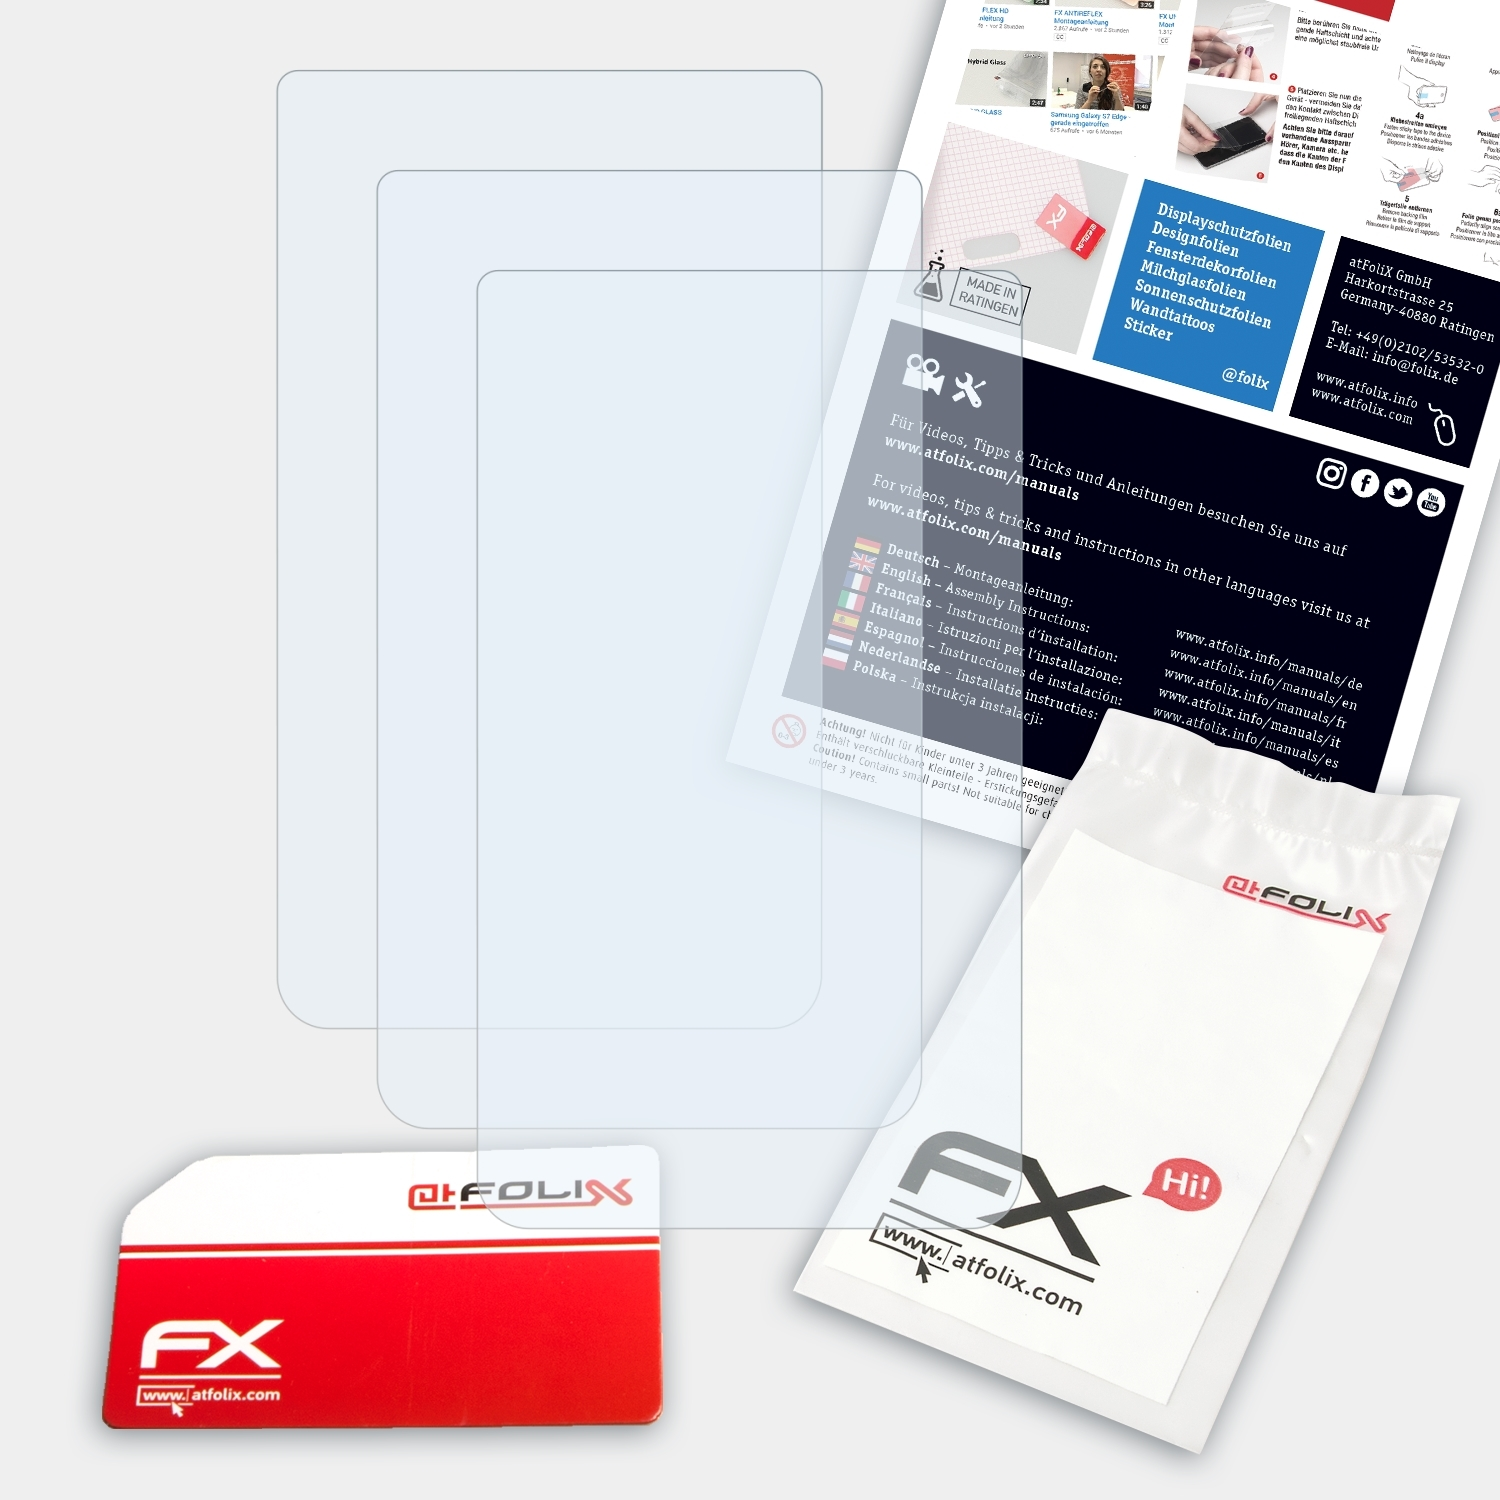 3x 400t) ATFOLIX Displayschutz(für Oregon Garmin FX-Clear